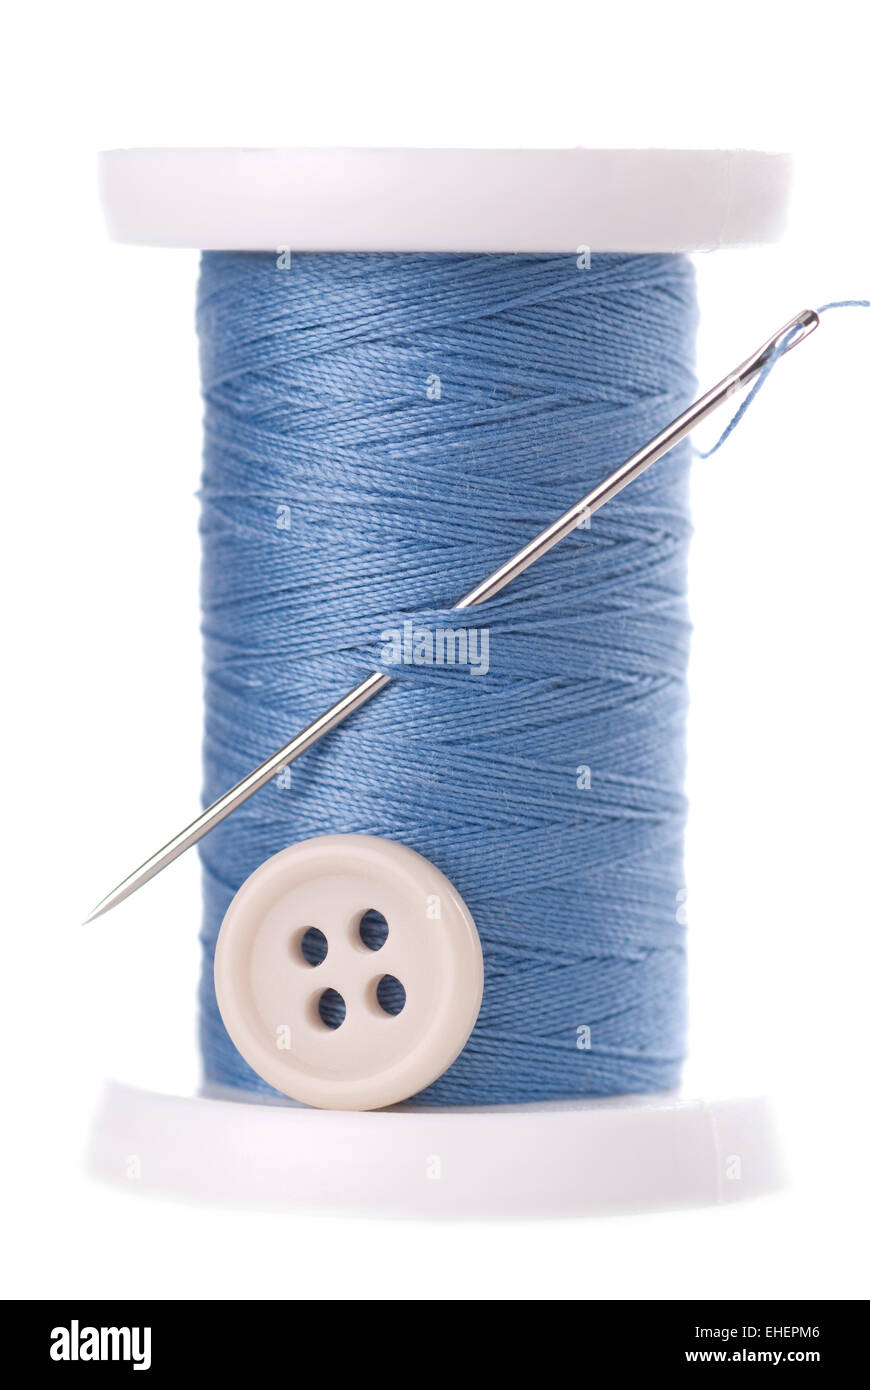 Una bobina de hilo azul con aguja y un botón blanco. Foto de stock